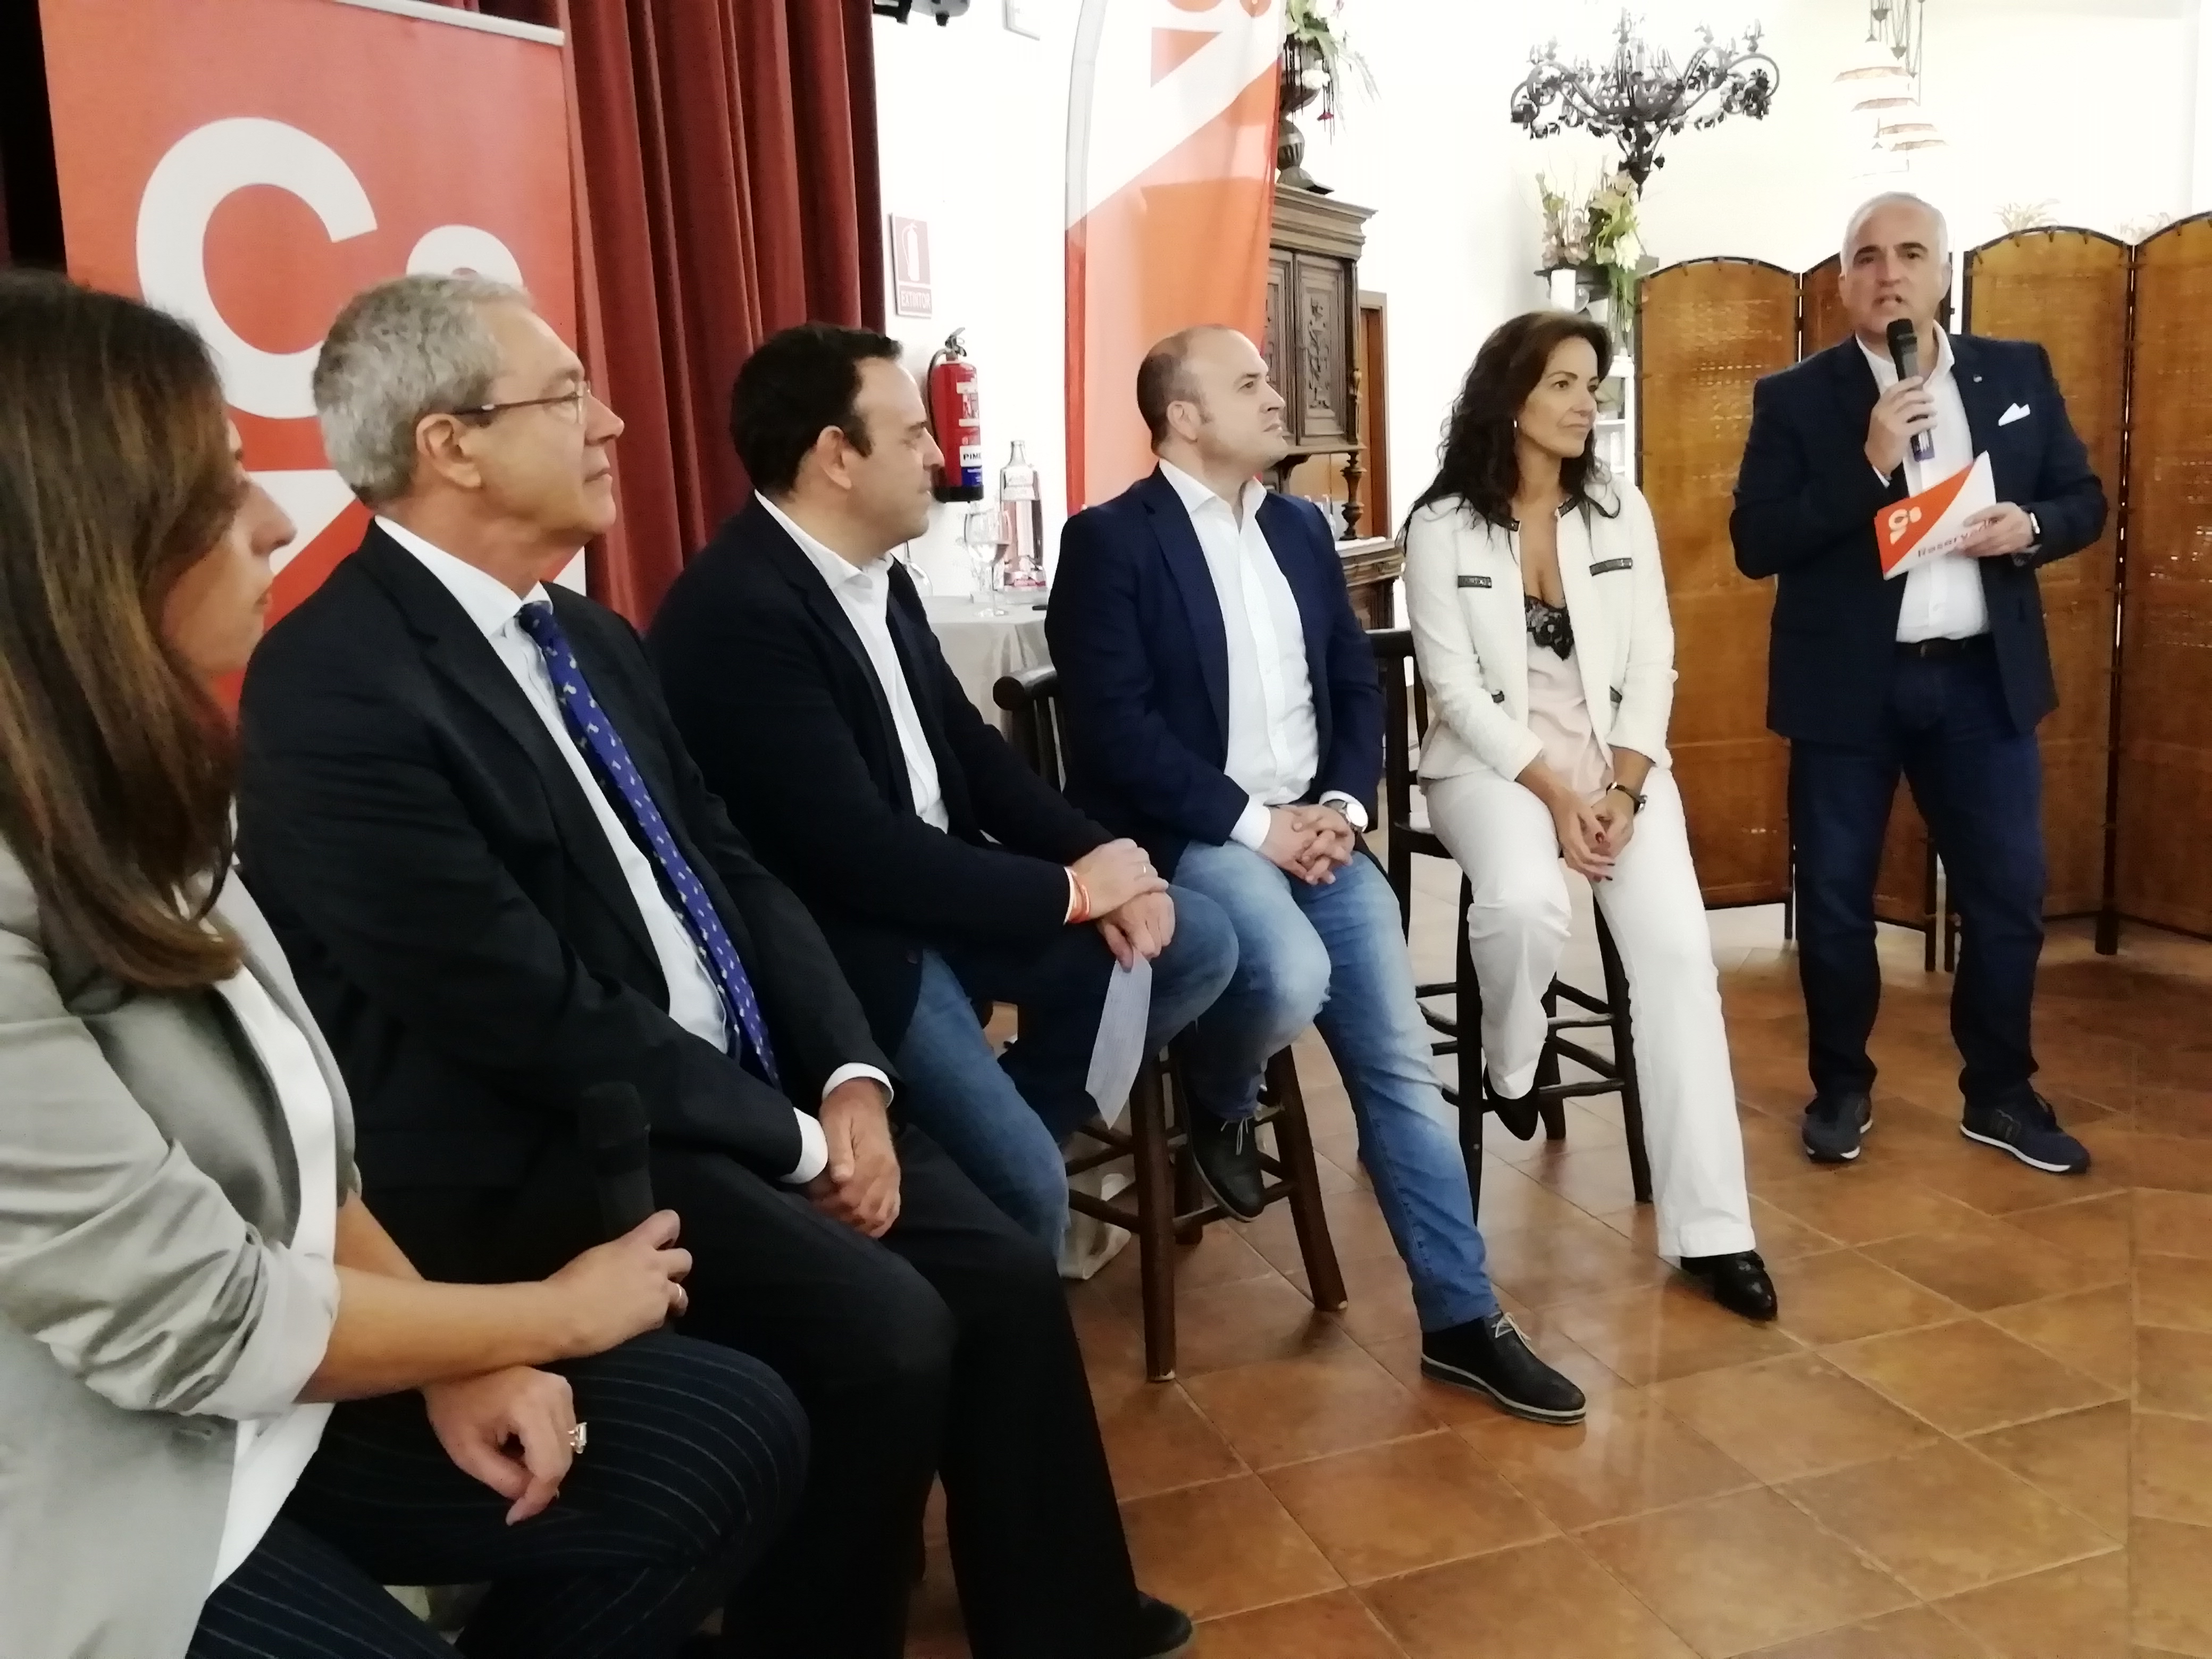 El consejero de Economía apoya la candidatura de Ciudadanos al Congreso en Lepe